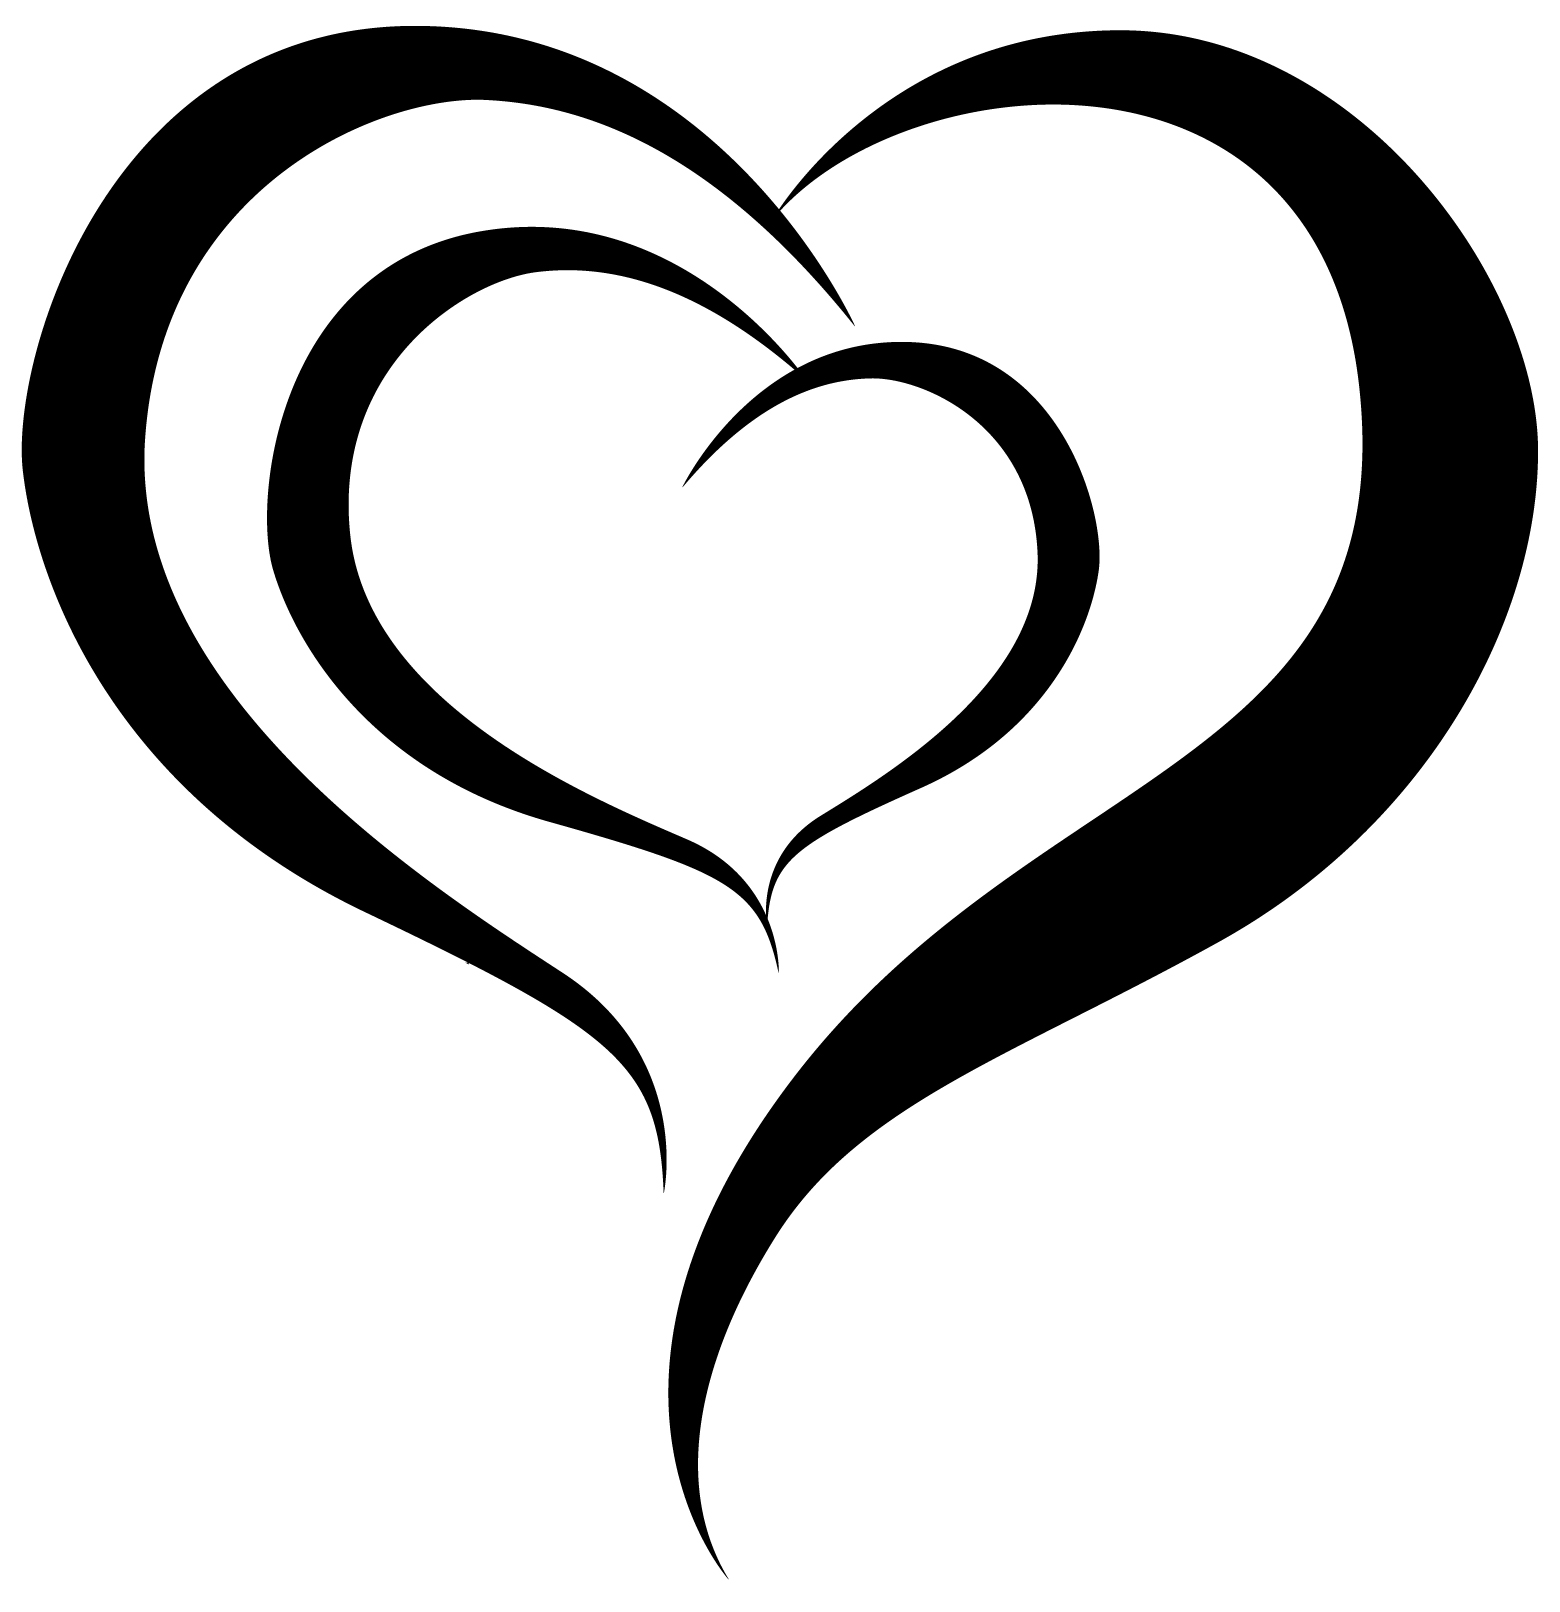 clipart heart symbol - photo #48